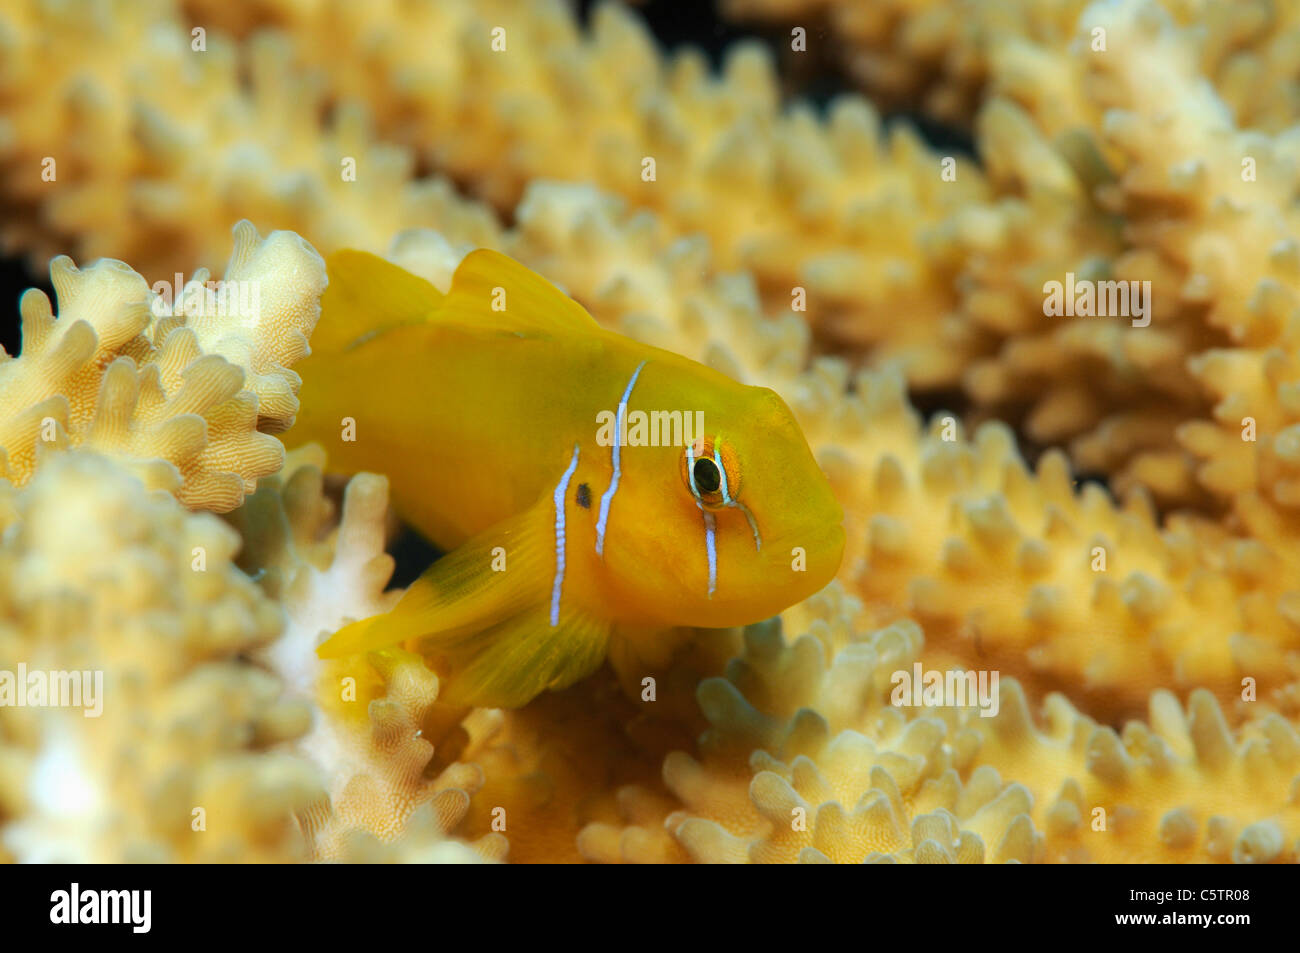 Egypt, Red Sea, Citron Goby (Gobiodon citrinus) Stock Photo